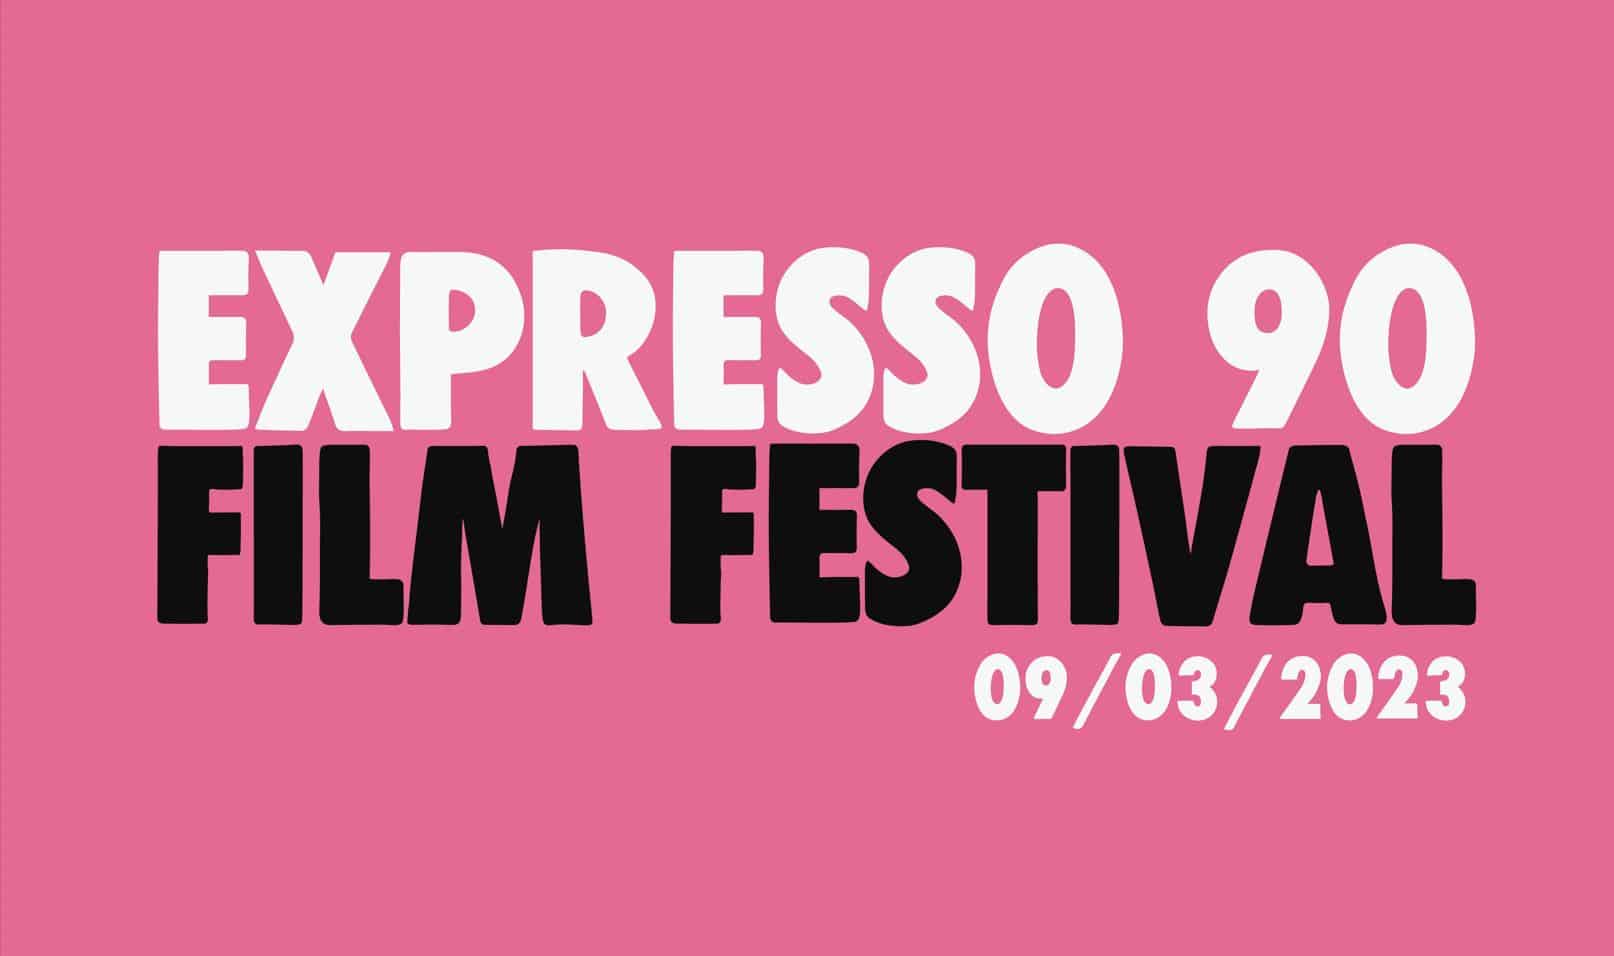 Expresso 90 Film Festival 2023